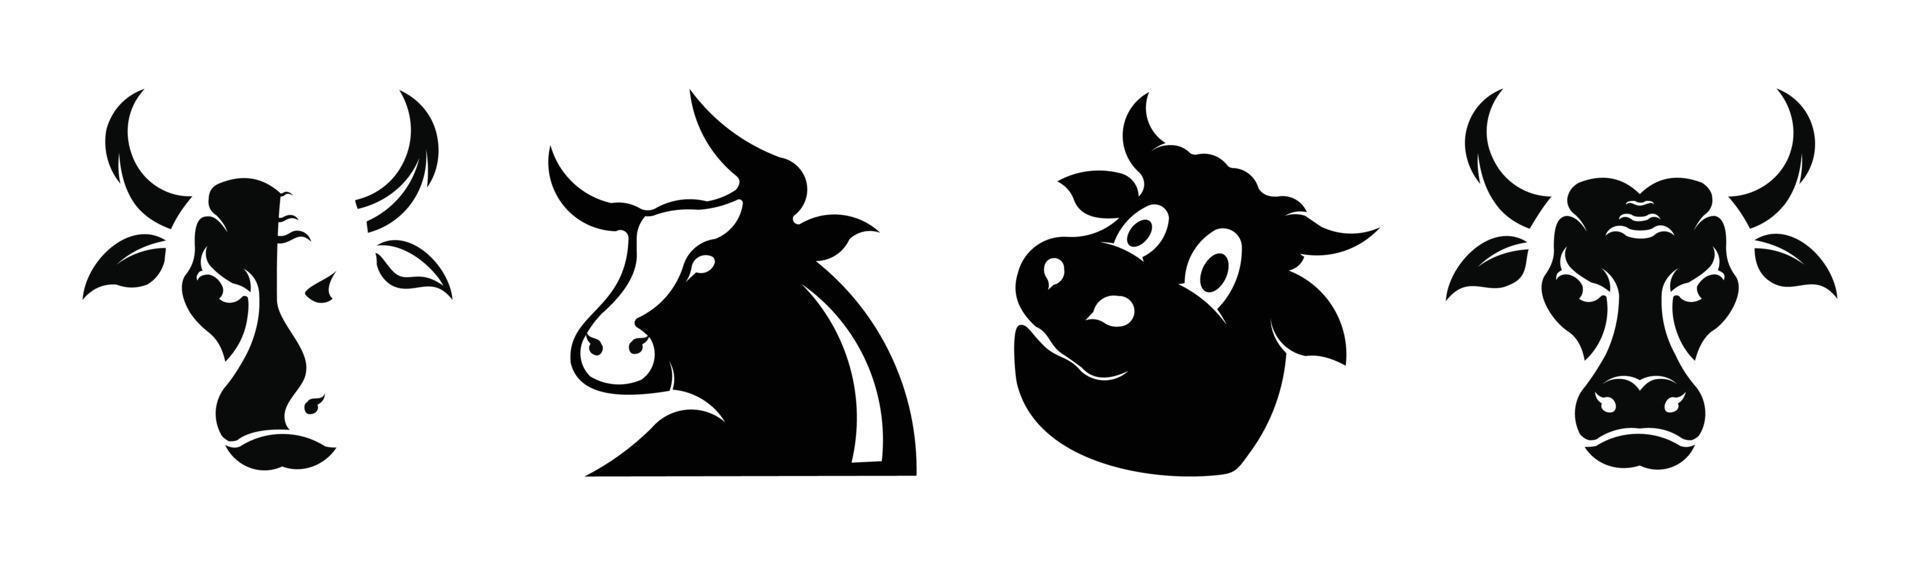 mucca set silhouette nera su sfondo bianco. silhouette di toro e mucca imposta icone di animali vettoriali